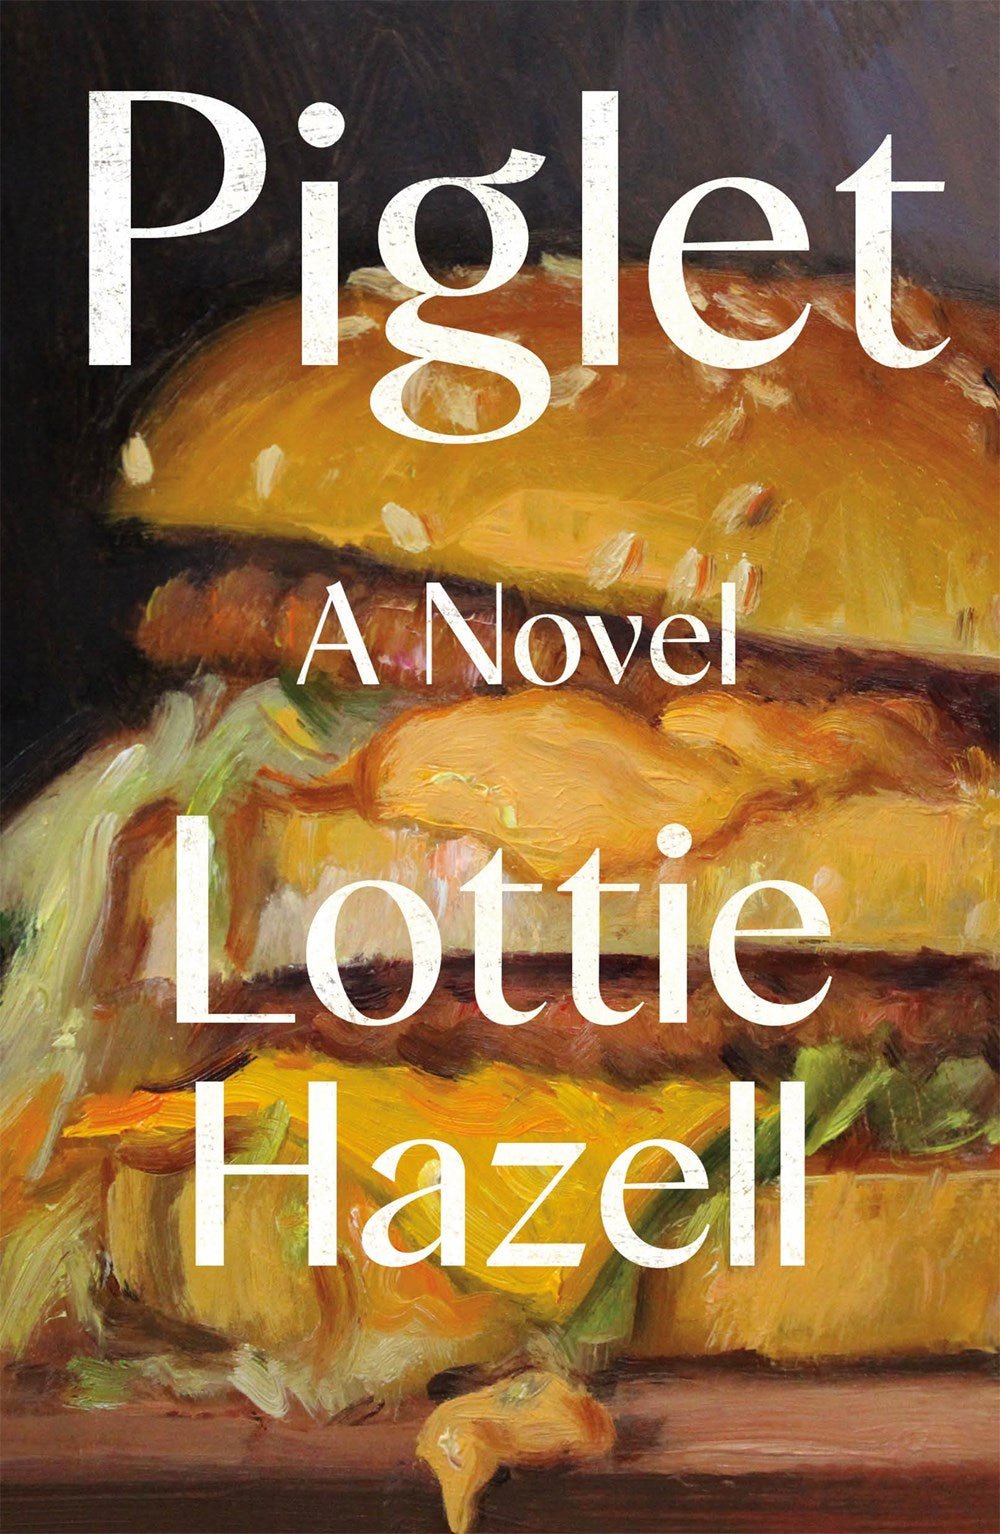 Piglet: A Novel by Lottie Hazell (2/27/24)